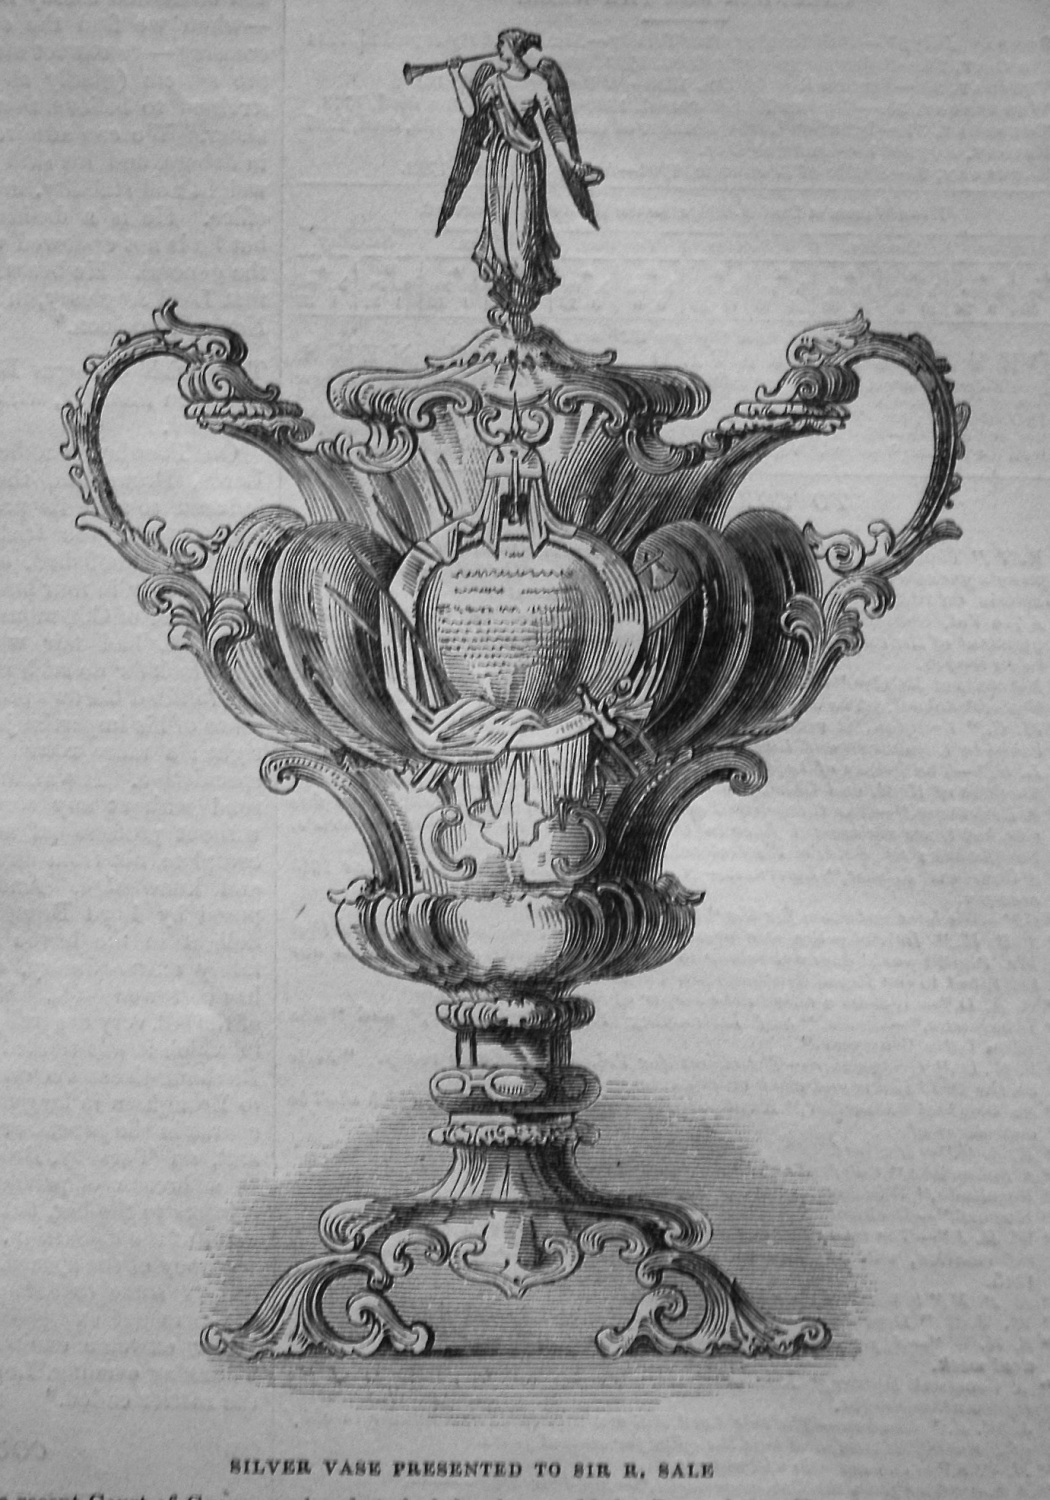 Silver Vase Presented to Sir Robert Sale. 1845